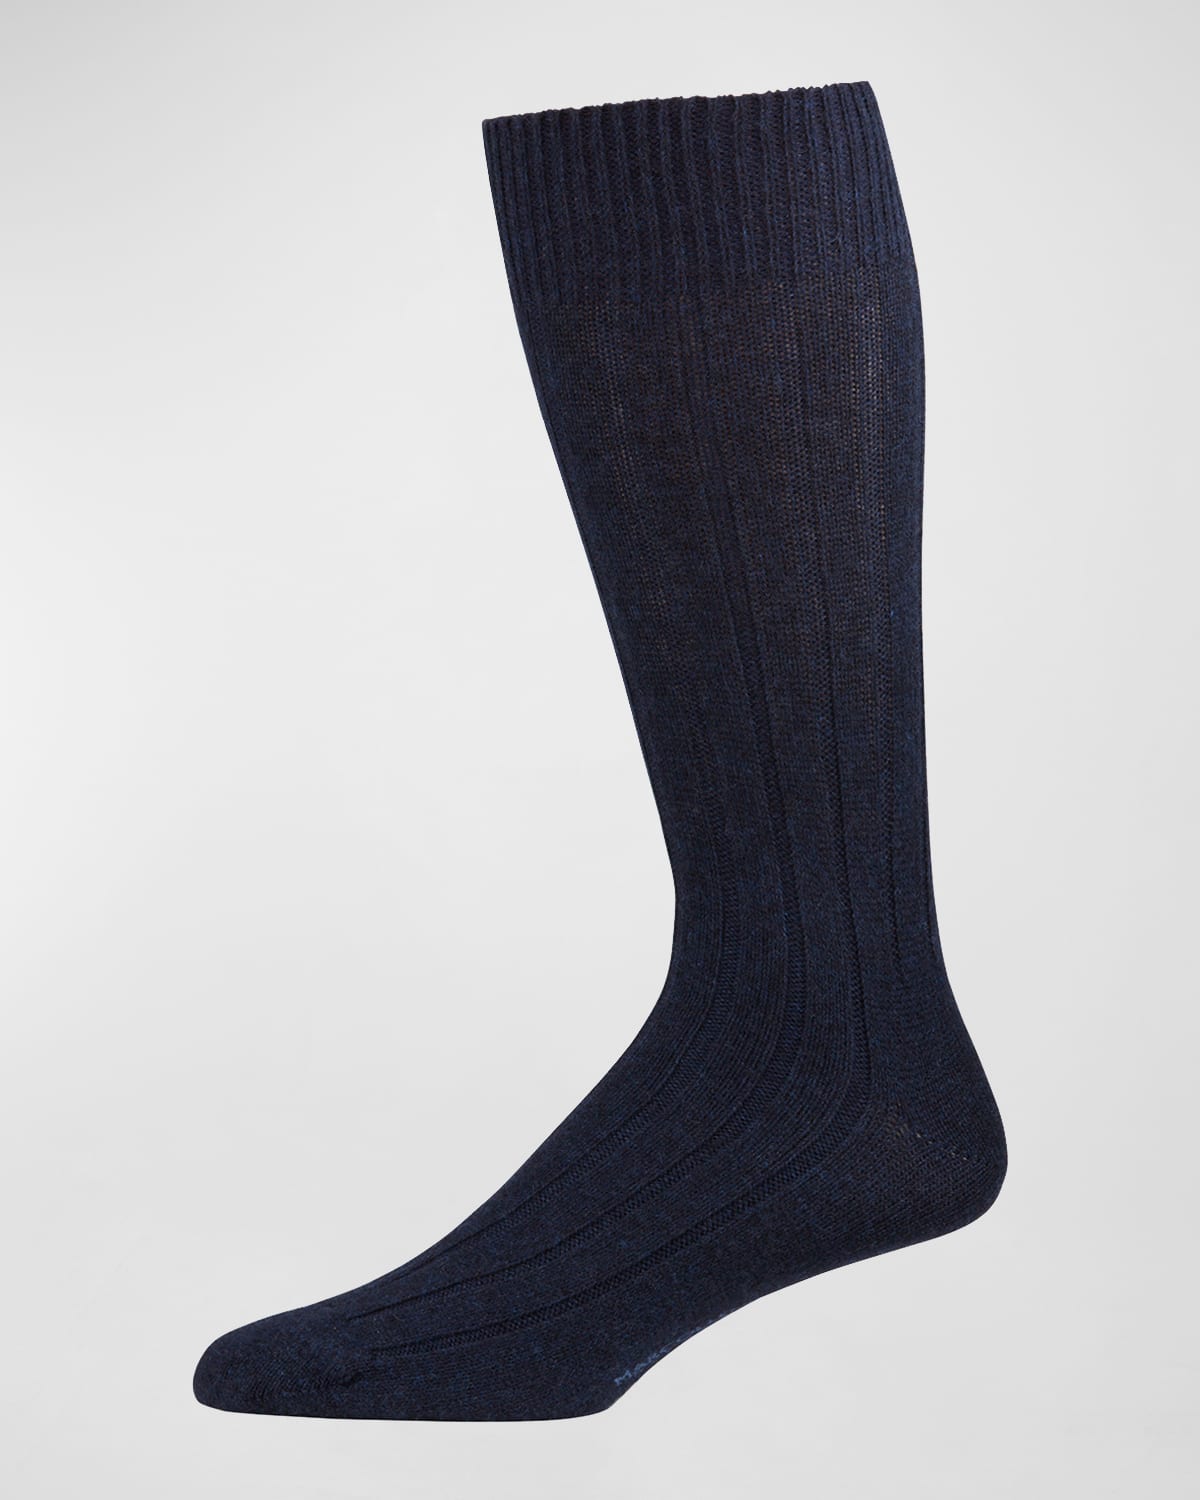 Marcoliani Men's Ribbed Cashmere Dress Socks